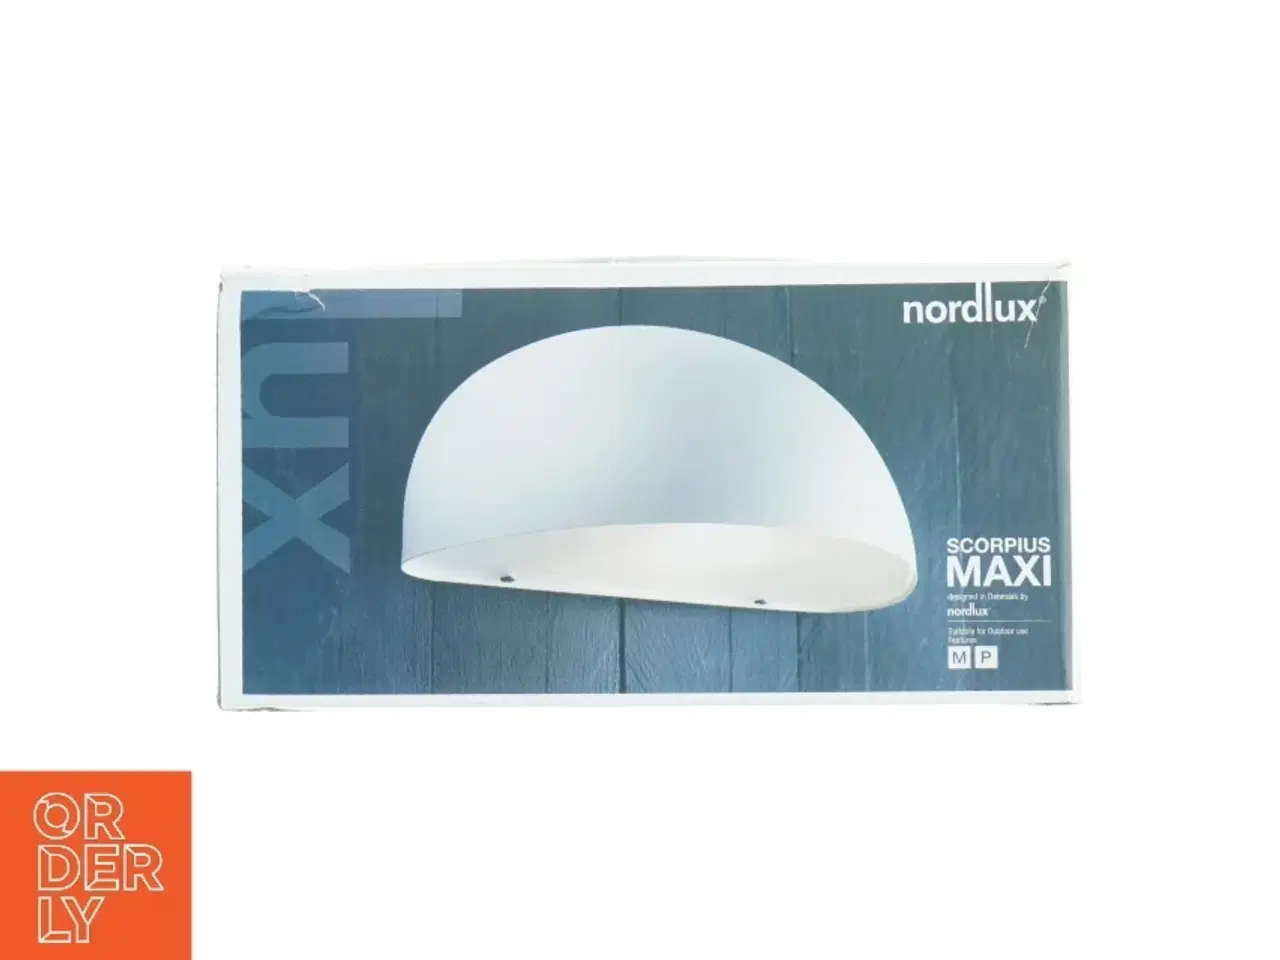 Billede 1 - Nordlux Scorpius Maxi udendørslampe fra Nordlux (str. 27 x 15 cm)